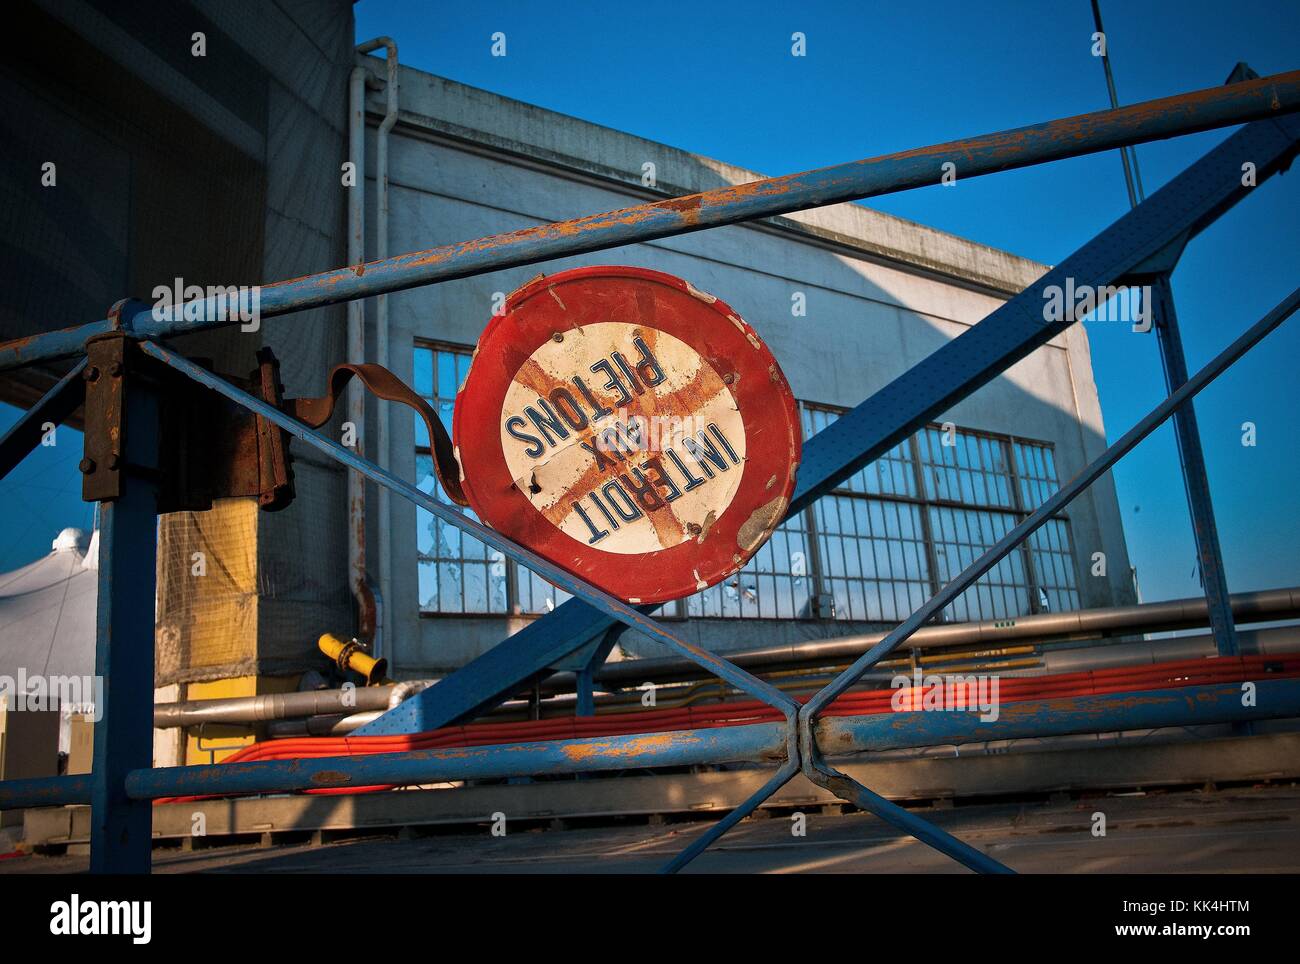 Seguin,  Renault's bridge, Shores of the Seine -  19/11/2011  -  France / Ile-de-France (region) / Boulogne-Billancourt  -  Seguin,  Renault's bridge, Shores of the Seine -  View of the island, the bridge,and the road sign.   -  Sylvain Leser / Le Pictorium Stock Photo